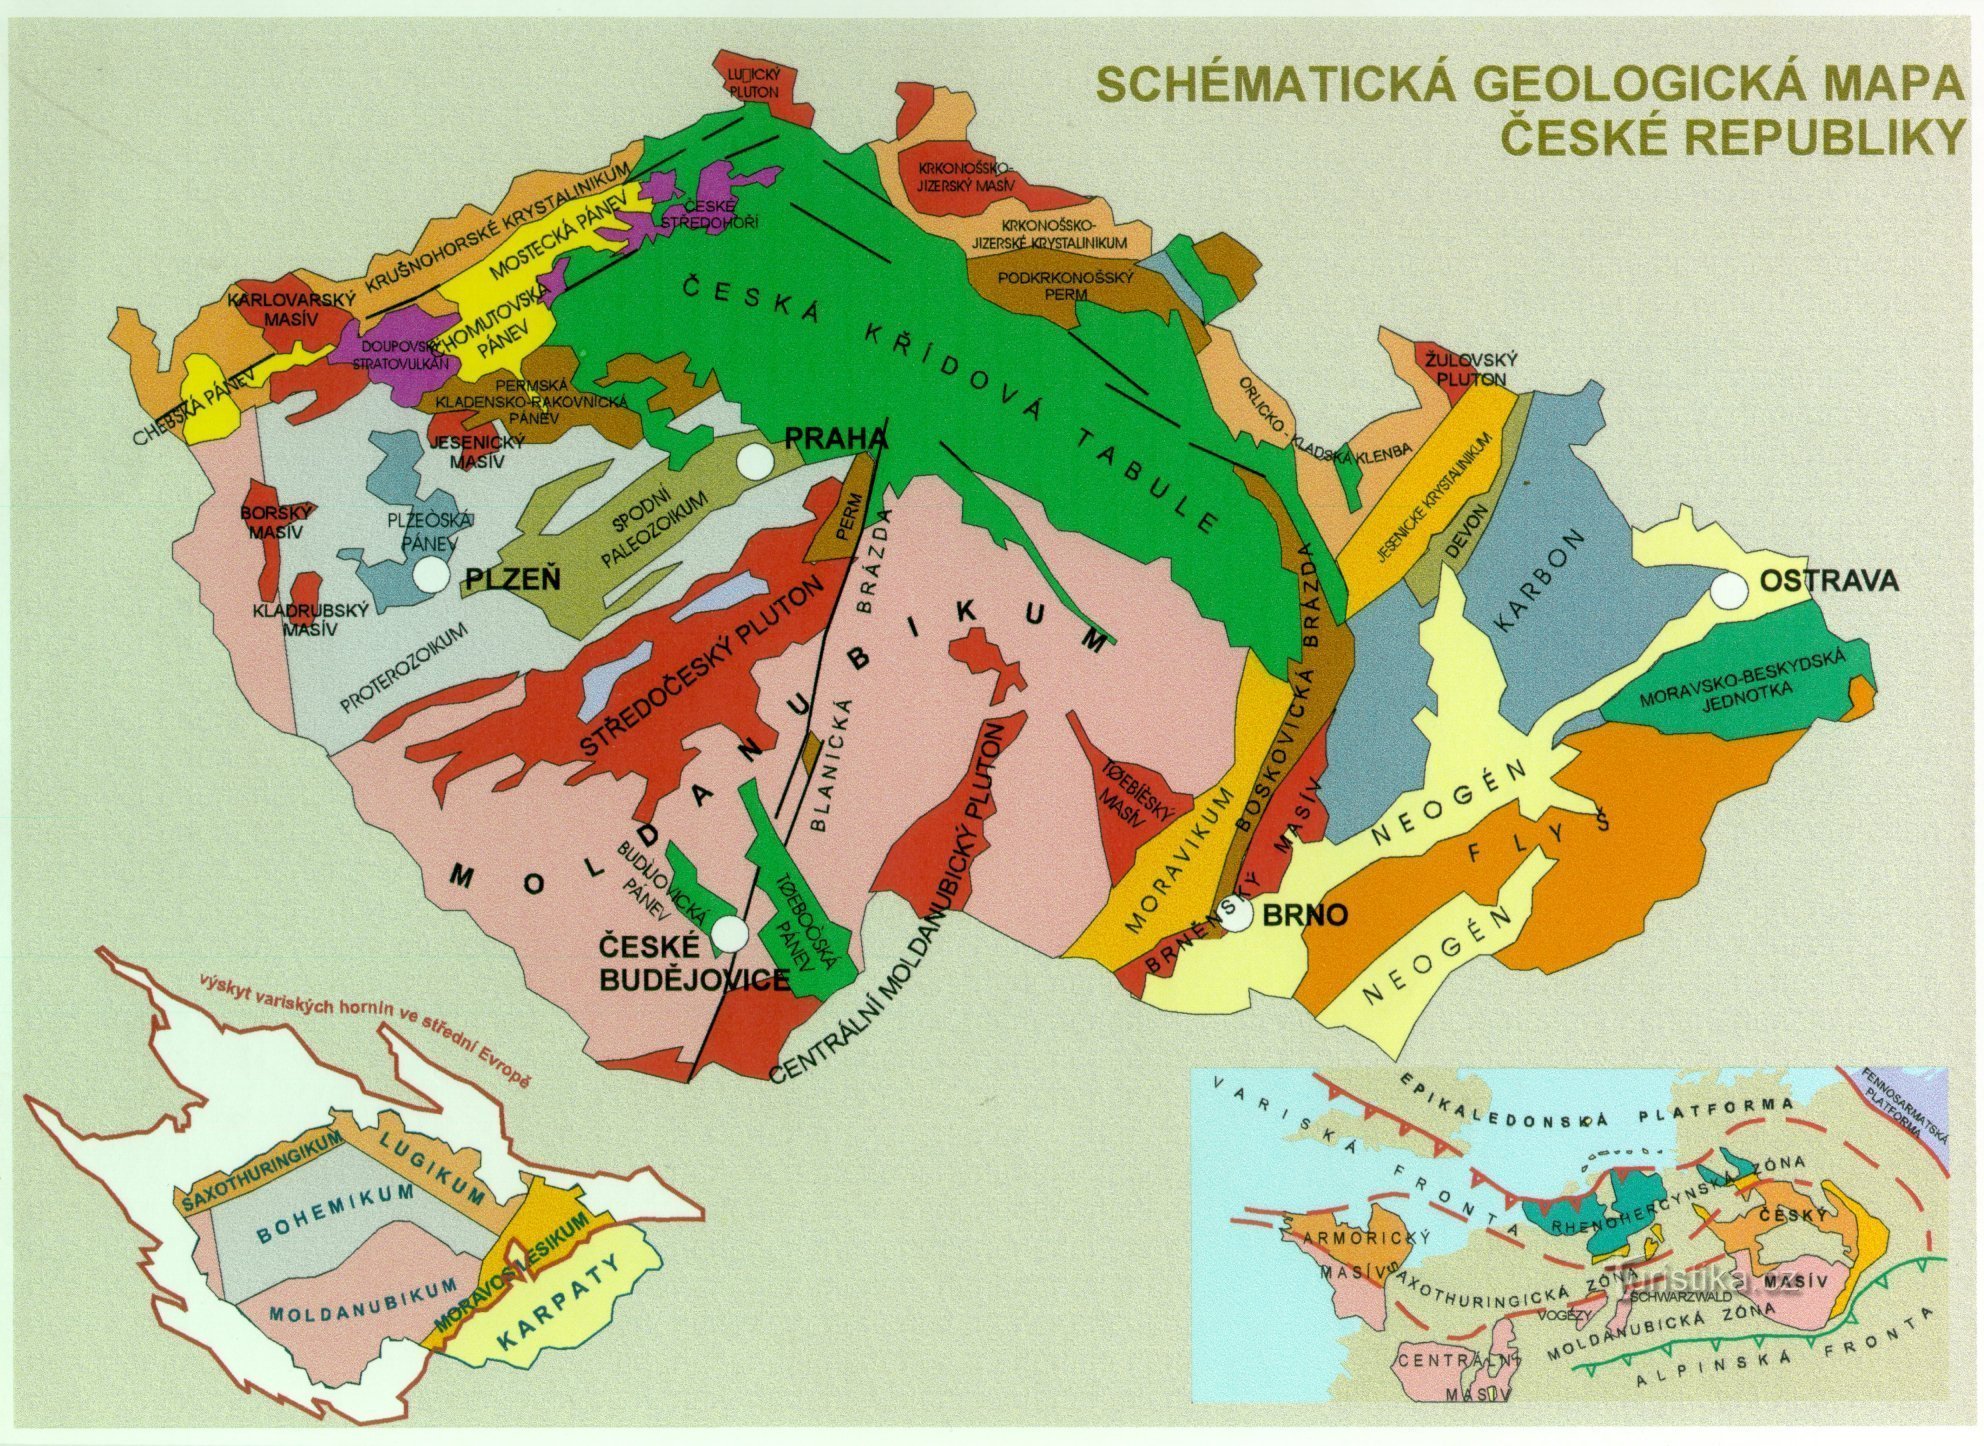 geologische Karte der Tschechischen Republik - ergänzendes Bild zum Text (von https://www.ig.